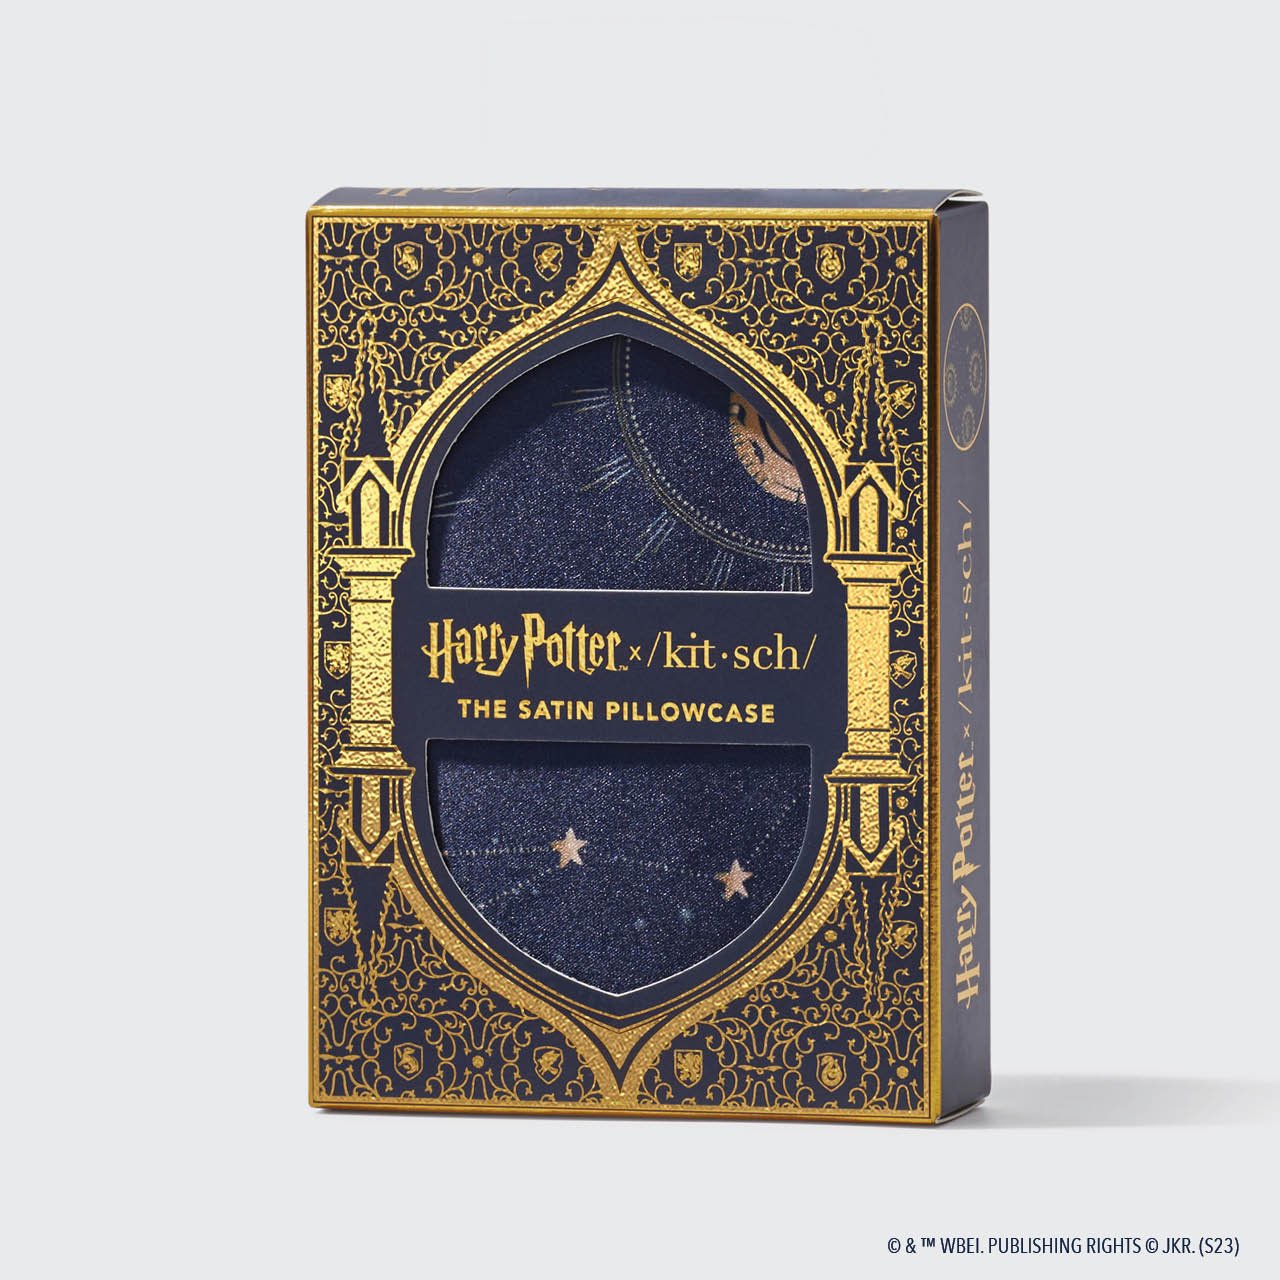 Pacchetto da collezione Harry Potter x Kitsch